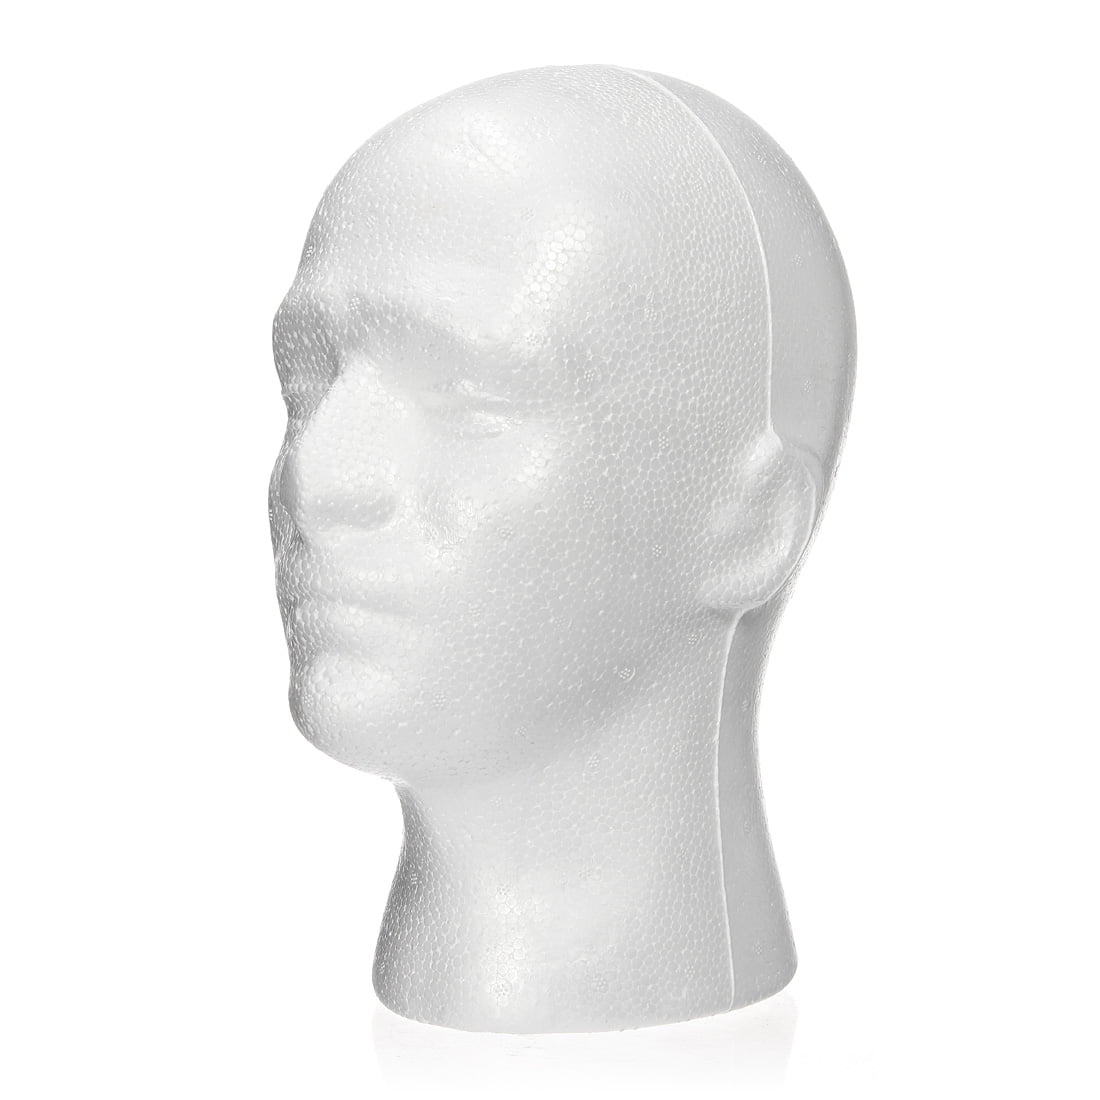 Male Mannequin Styrofoam Foam Manikin Head Model Wig Glasses Hat Cap Display GIL 